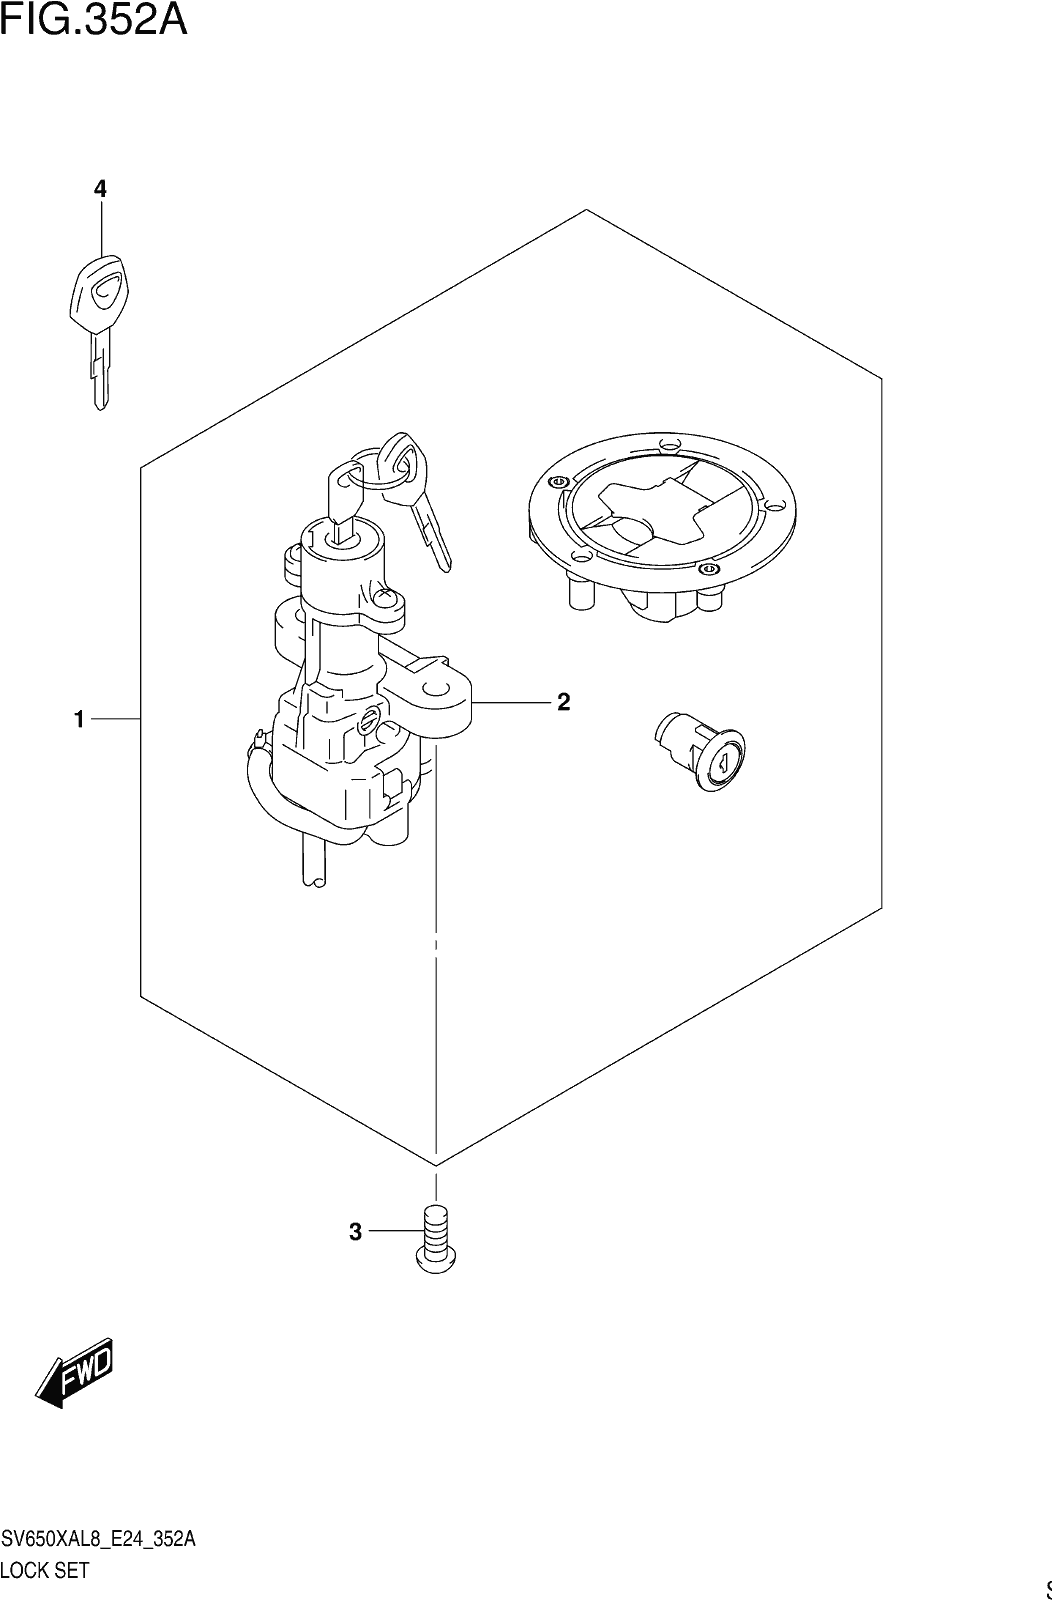 Fig.352a Lock Set